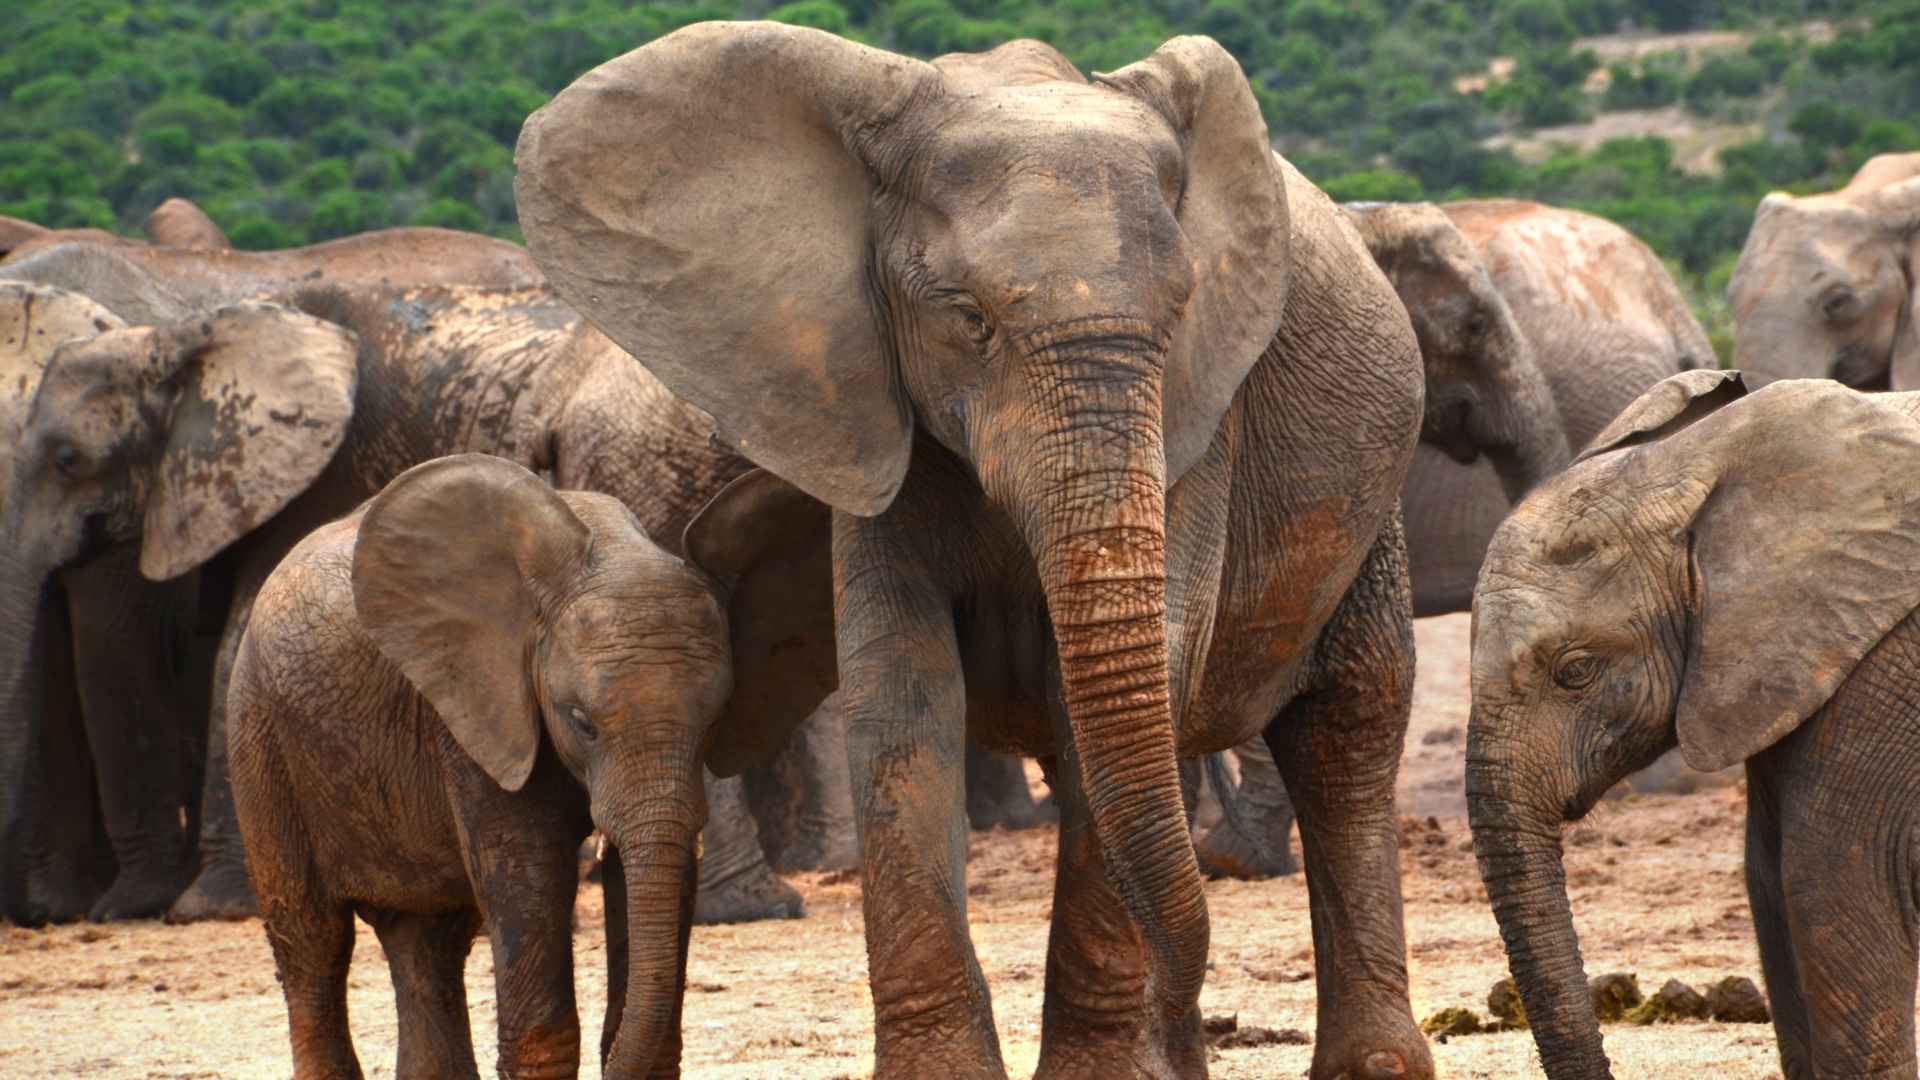 非洲丛林中的大象, 大象和猛犸象, 陆地动物, 野生动物, 印度大象 壁纸 1920x1080 允许